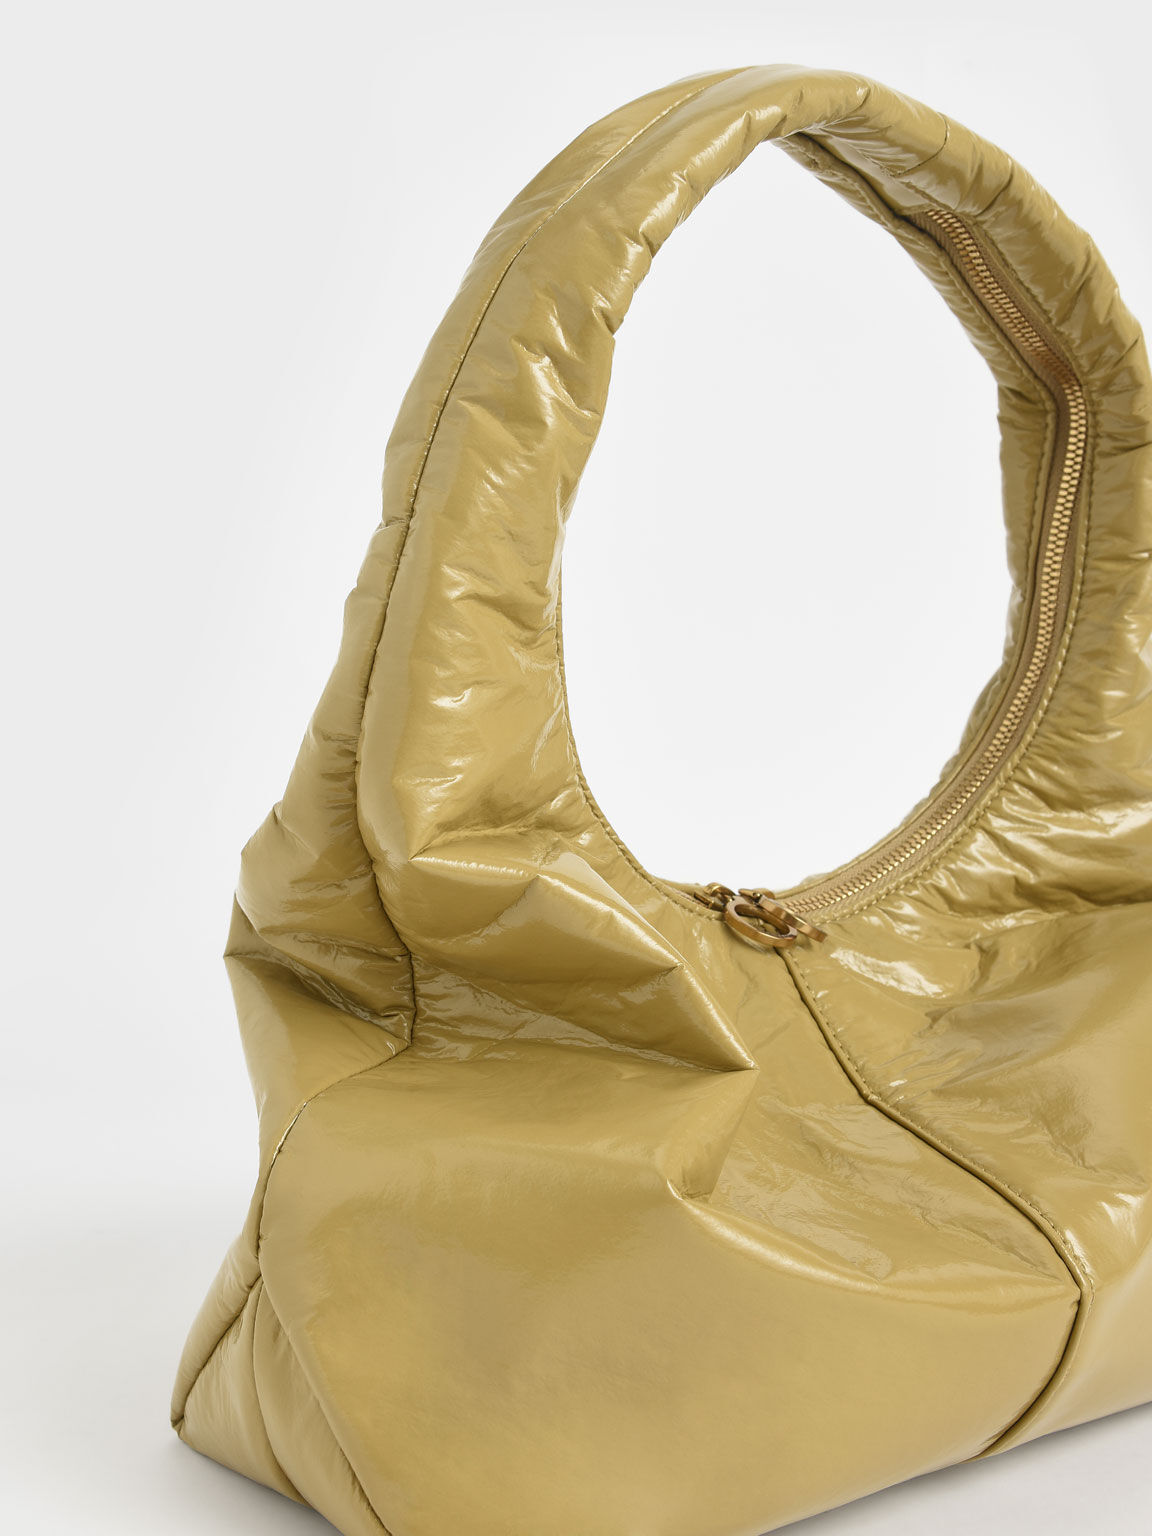 Arch Wrinkled-Effect Large Hobo Bag, Sand, hi-res